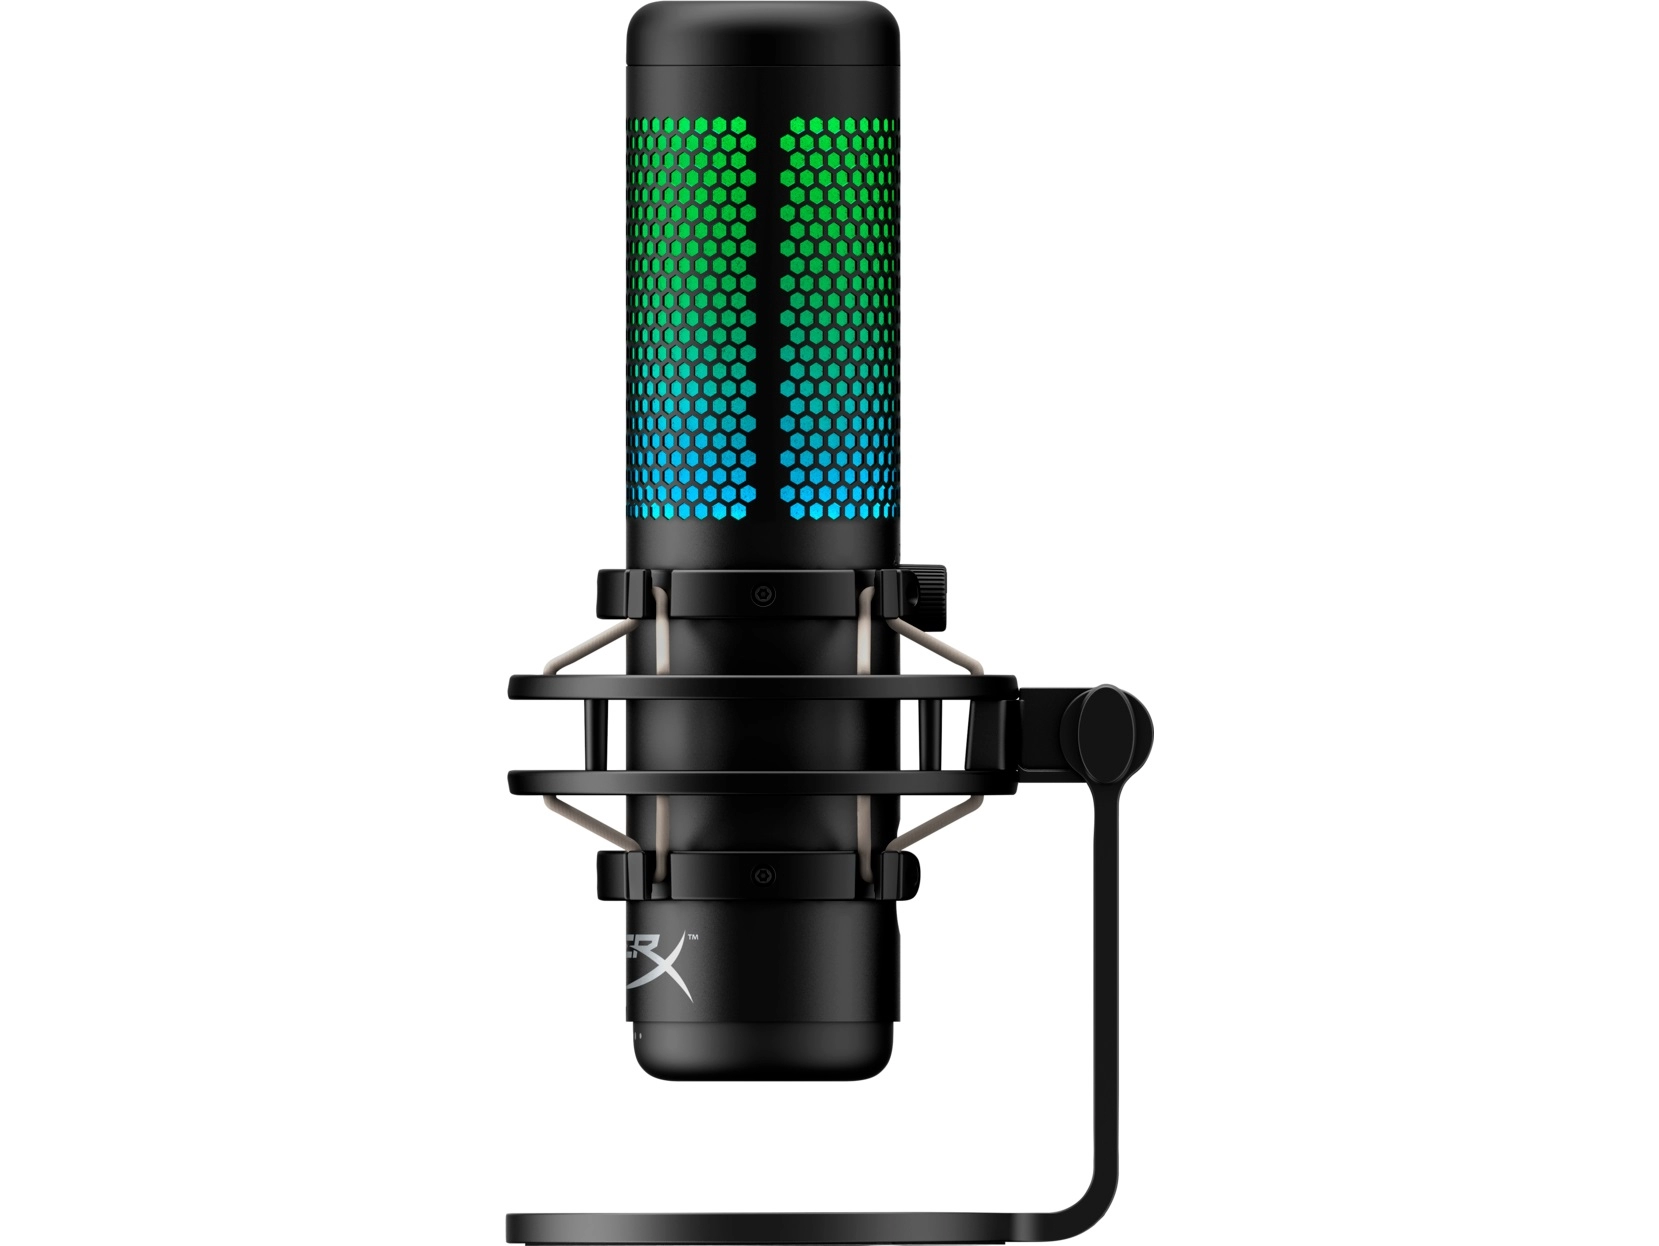 Микрофон для стриминга HyperX QuadCast S, RGB, [4P5P7AA]